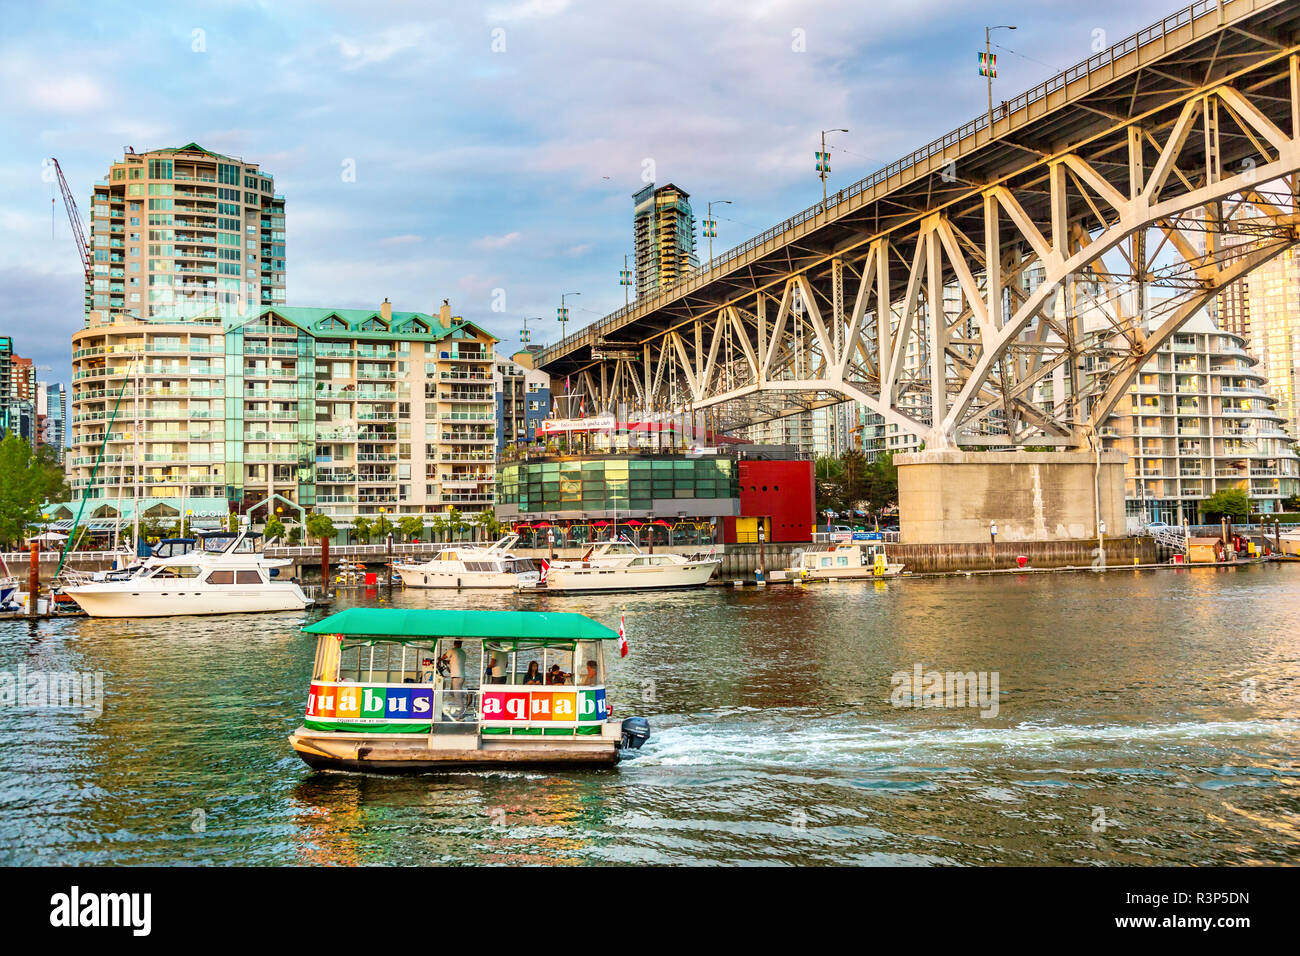 L'île Granville Bridge avec ferry, yachts et les immeubles à appartements, Vancouver, British Columbia, Canada Banque D'Images